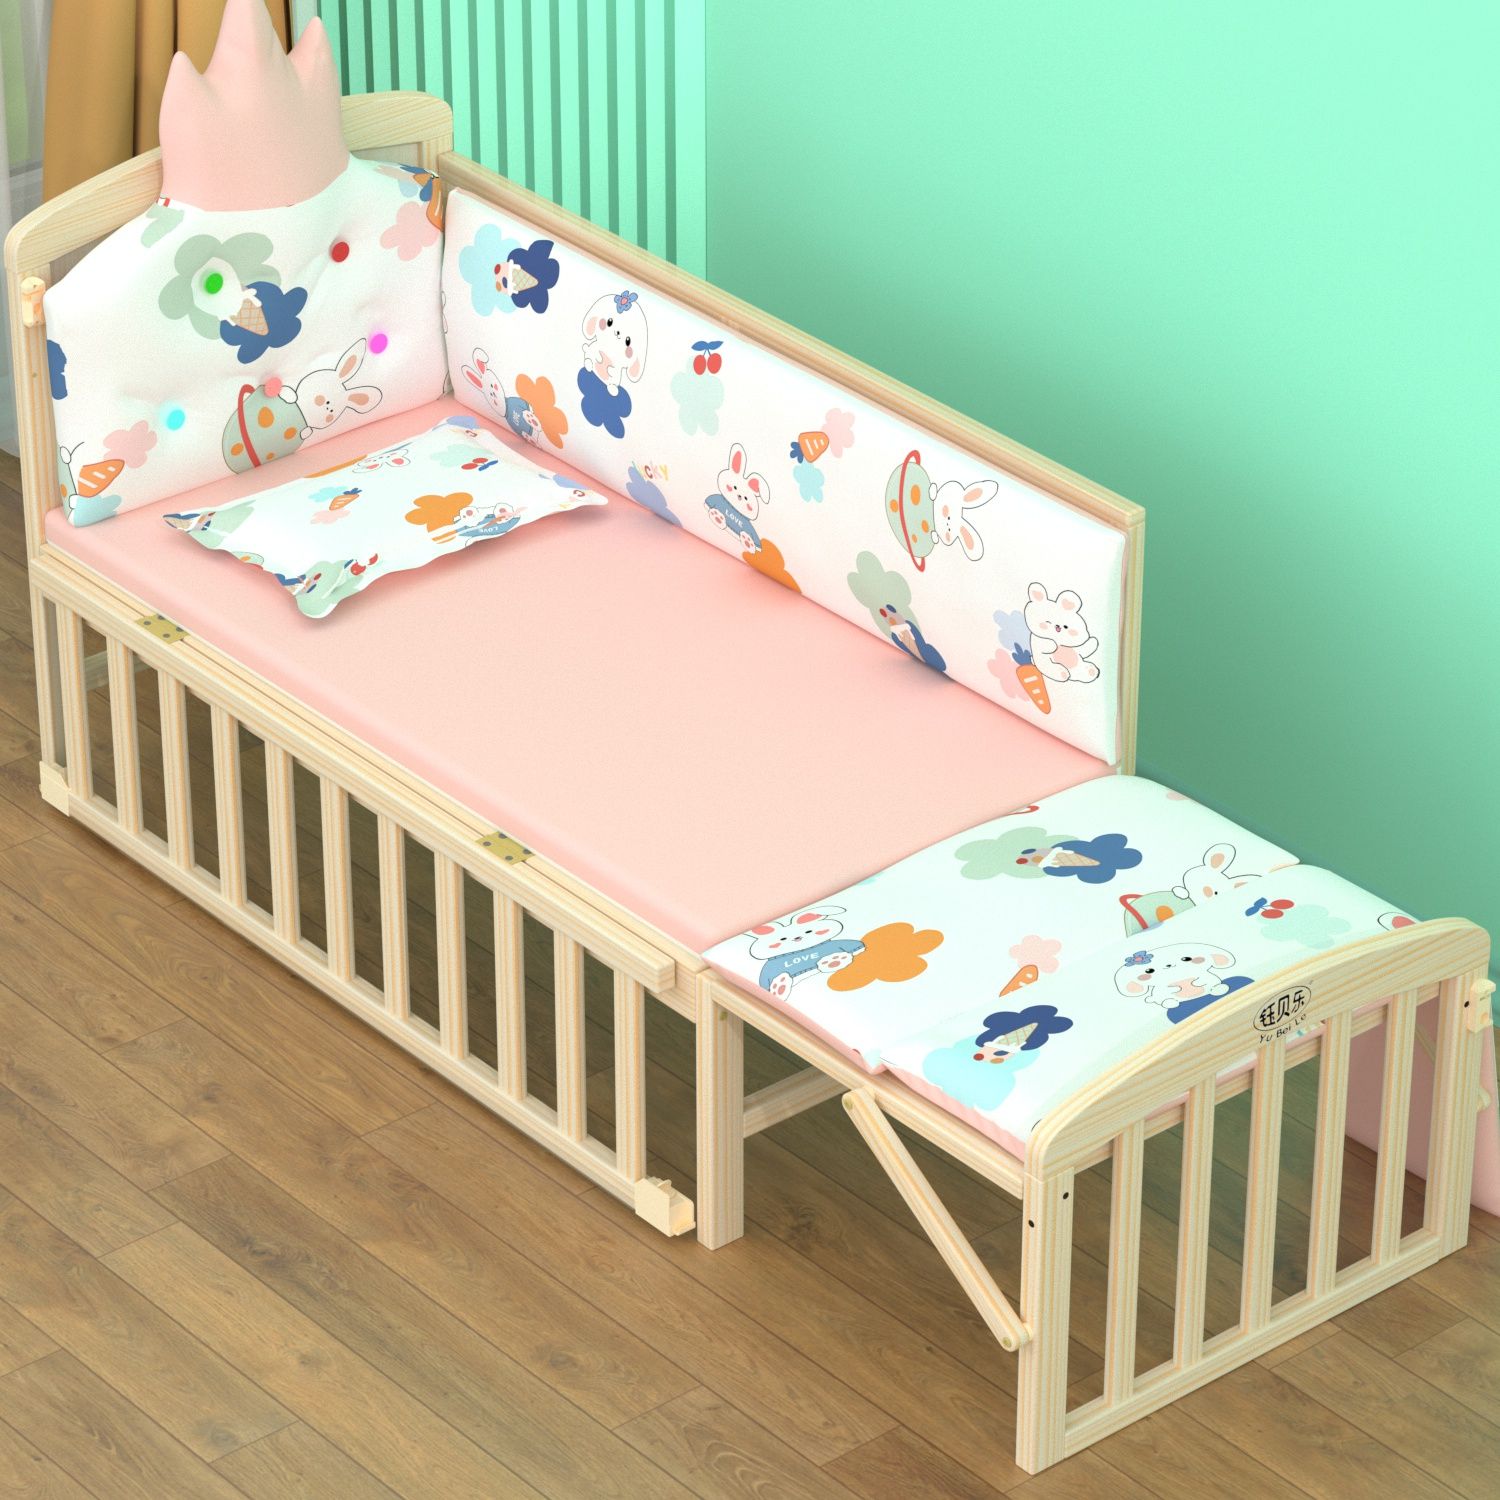 特价清仓婴儿床拼接大床实木多功能新生儿童床可移动摇篮宝宝bb床 婴童用品 床中床 原图主图